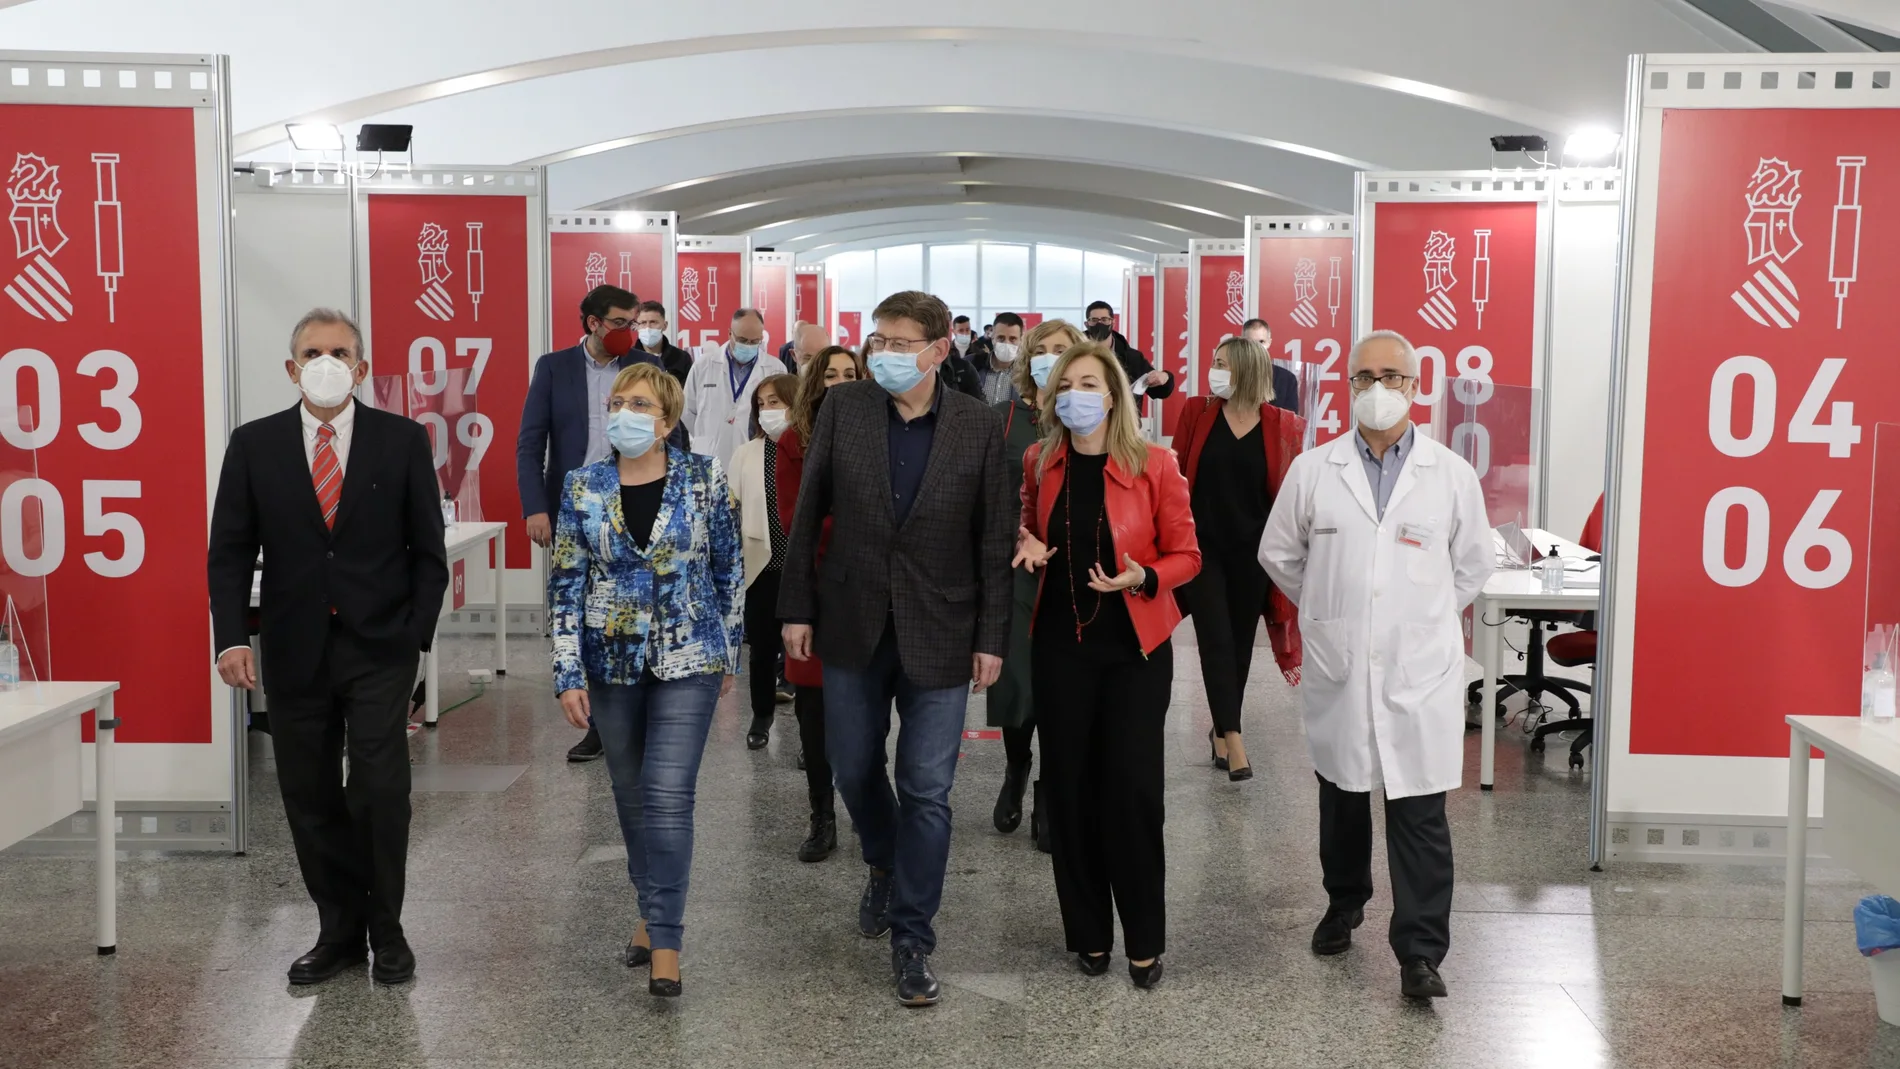 El presidente de la Generalitat, Ximo Puig, y la consellera de Sanidad, Ana Barceló, han visitado esta mañana el centro de vacunación masiva de la Ciudad de las Artes de Valencia